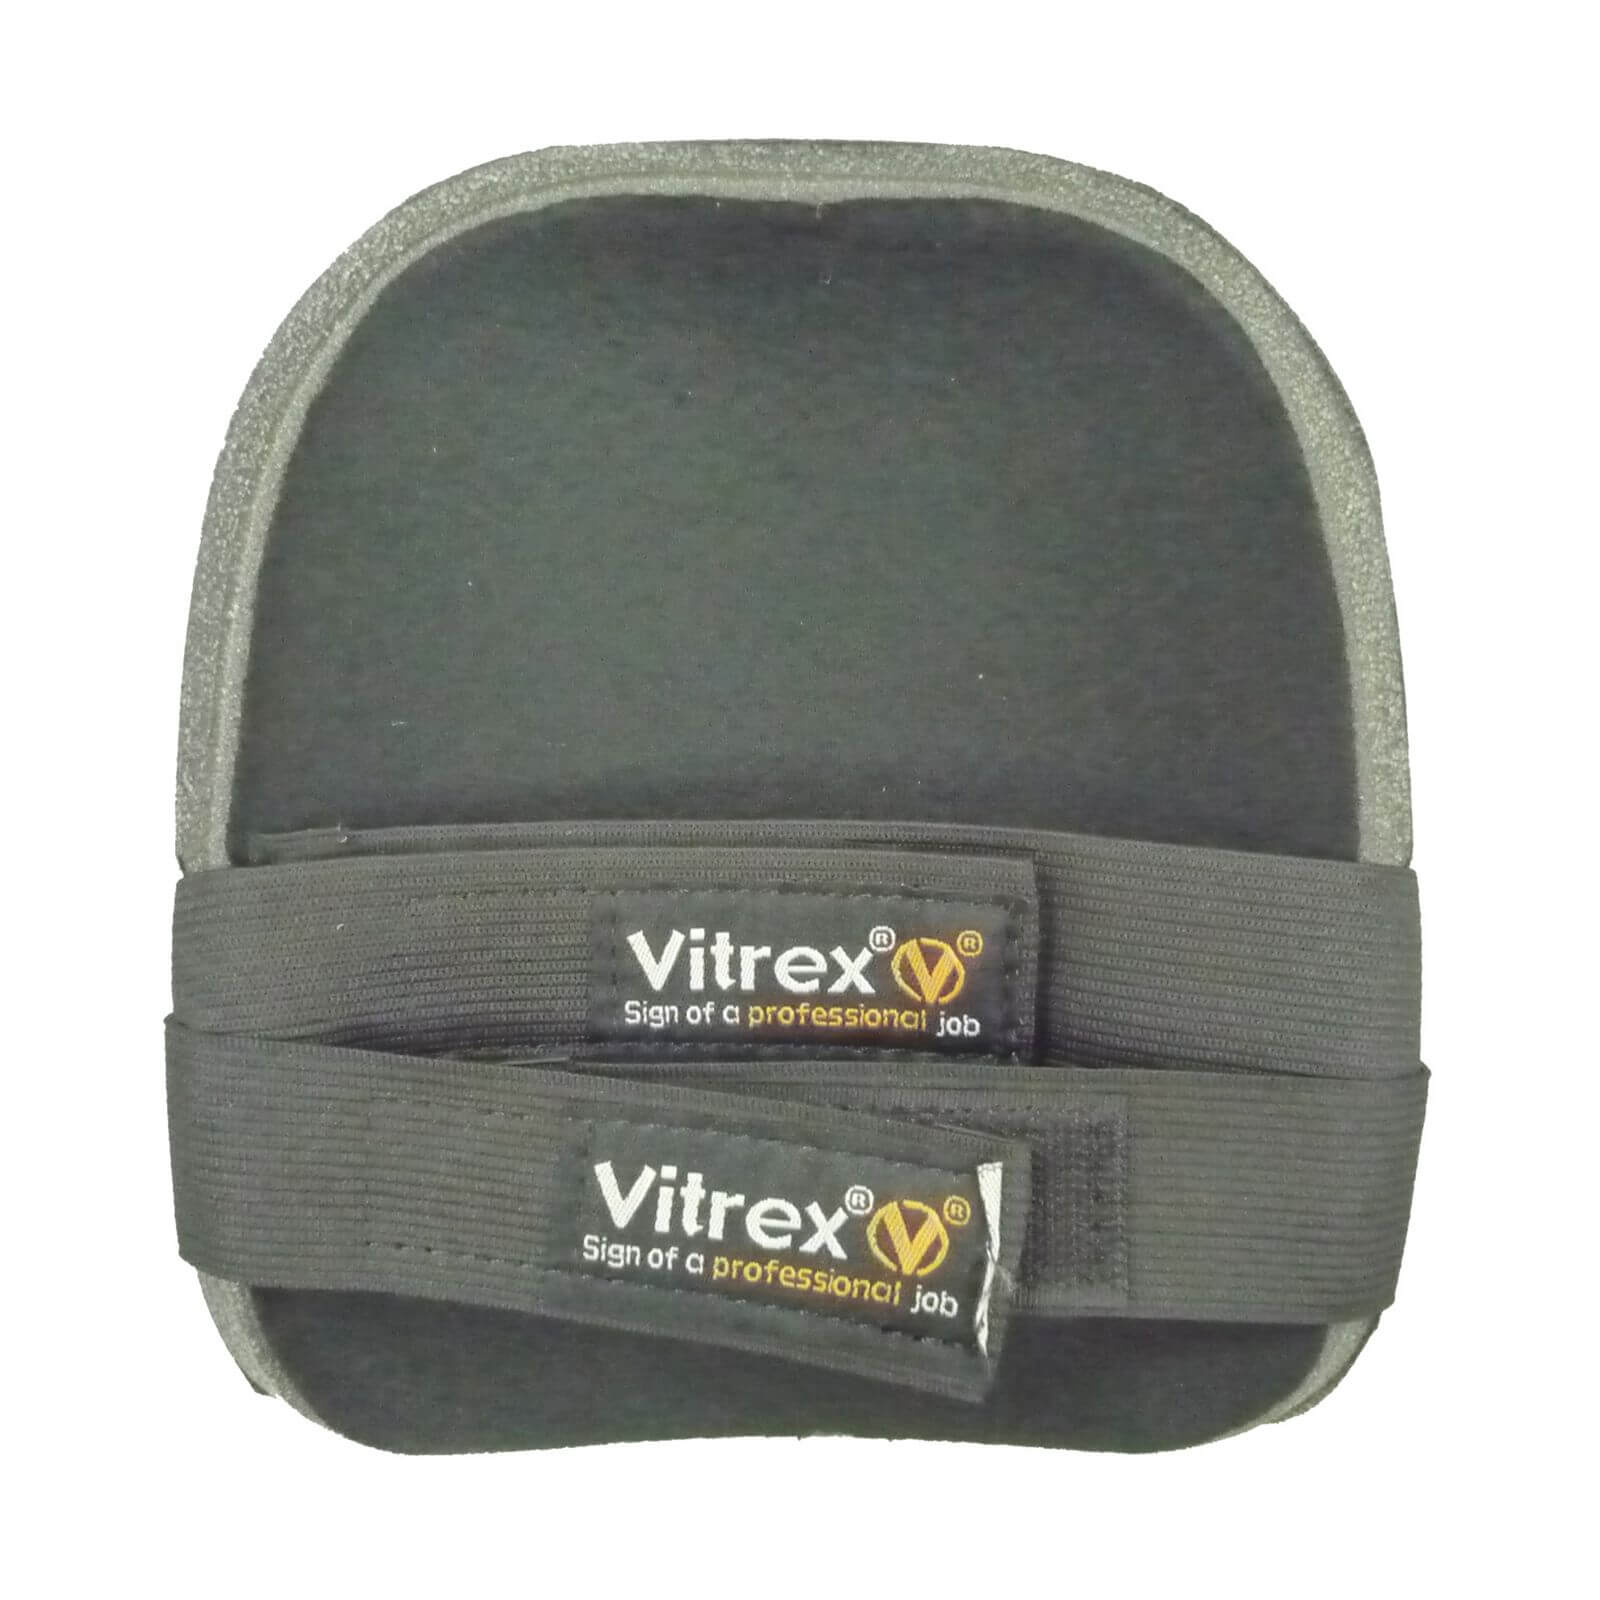 Vitrex General Purpose Knee Pads